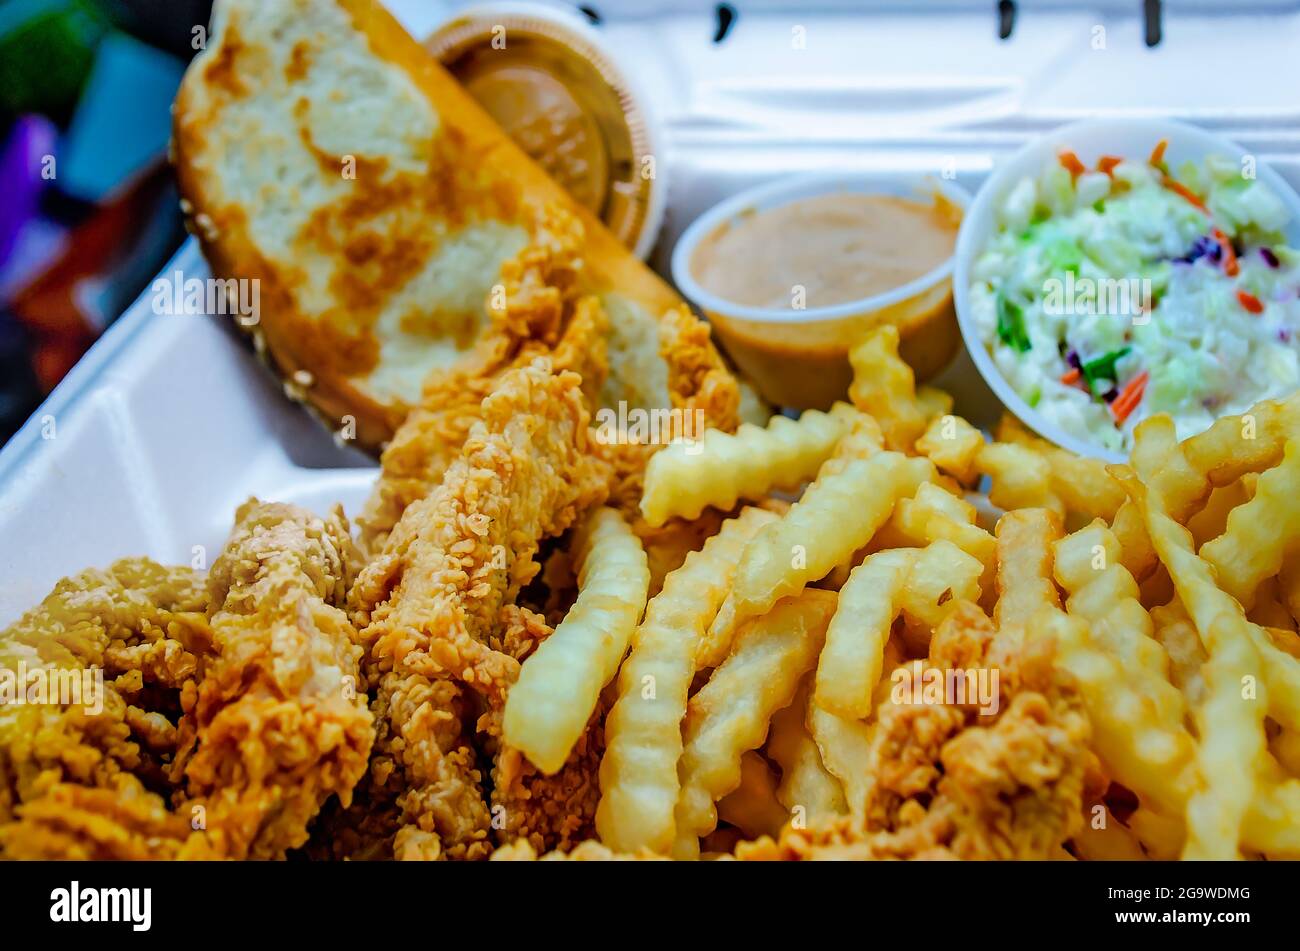 La combinación de Caniac, con dedos de pollo y papas fritas, está representada en el restaurante Raising Cane's, 24 de julio de 2021, en Biloxi, Mississippi. Foto de stock